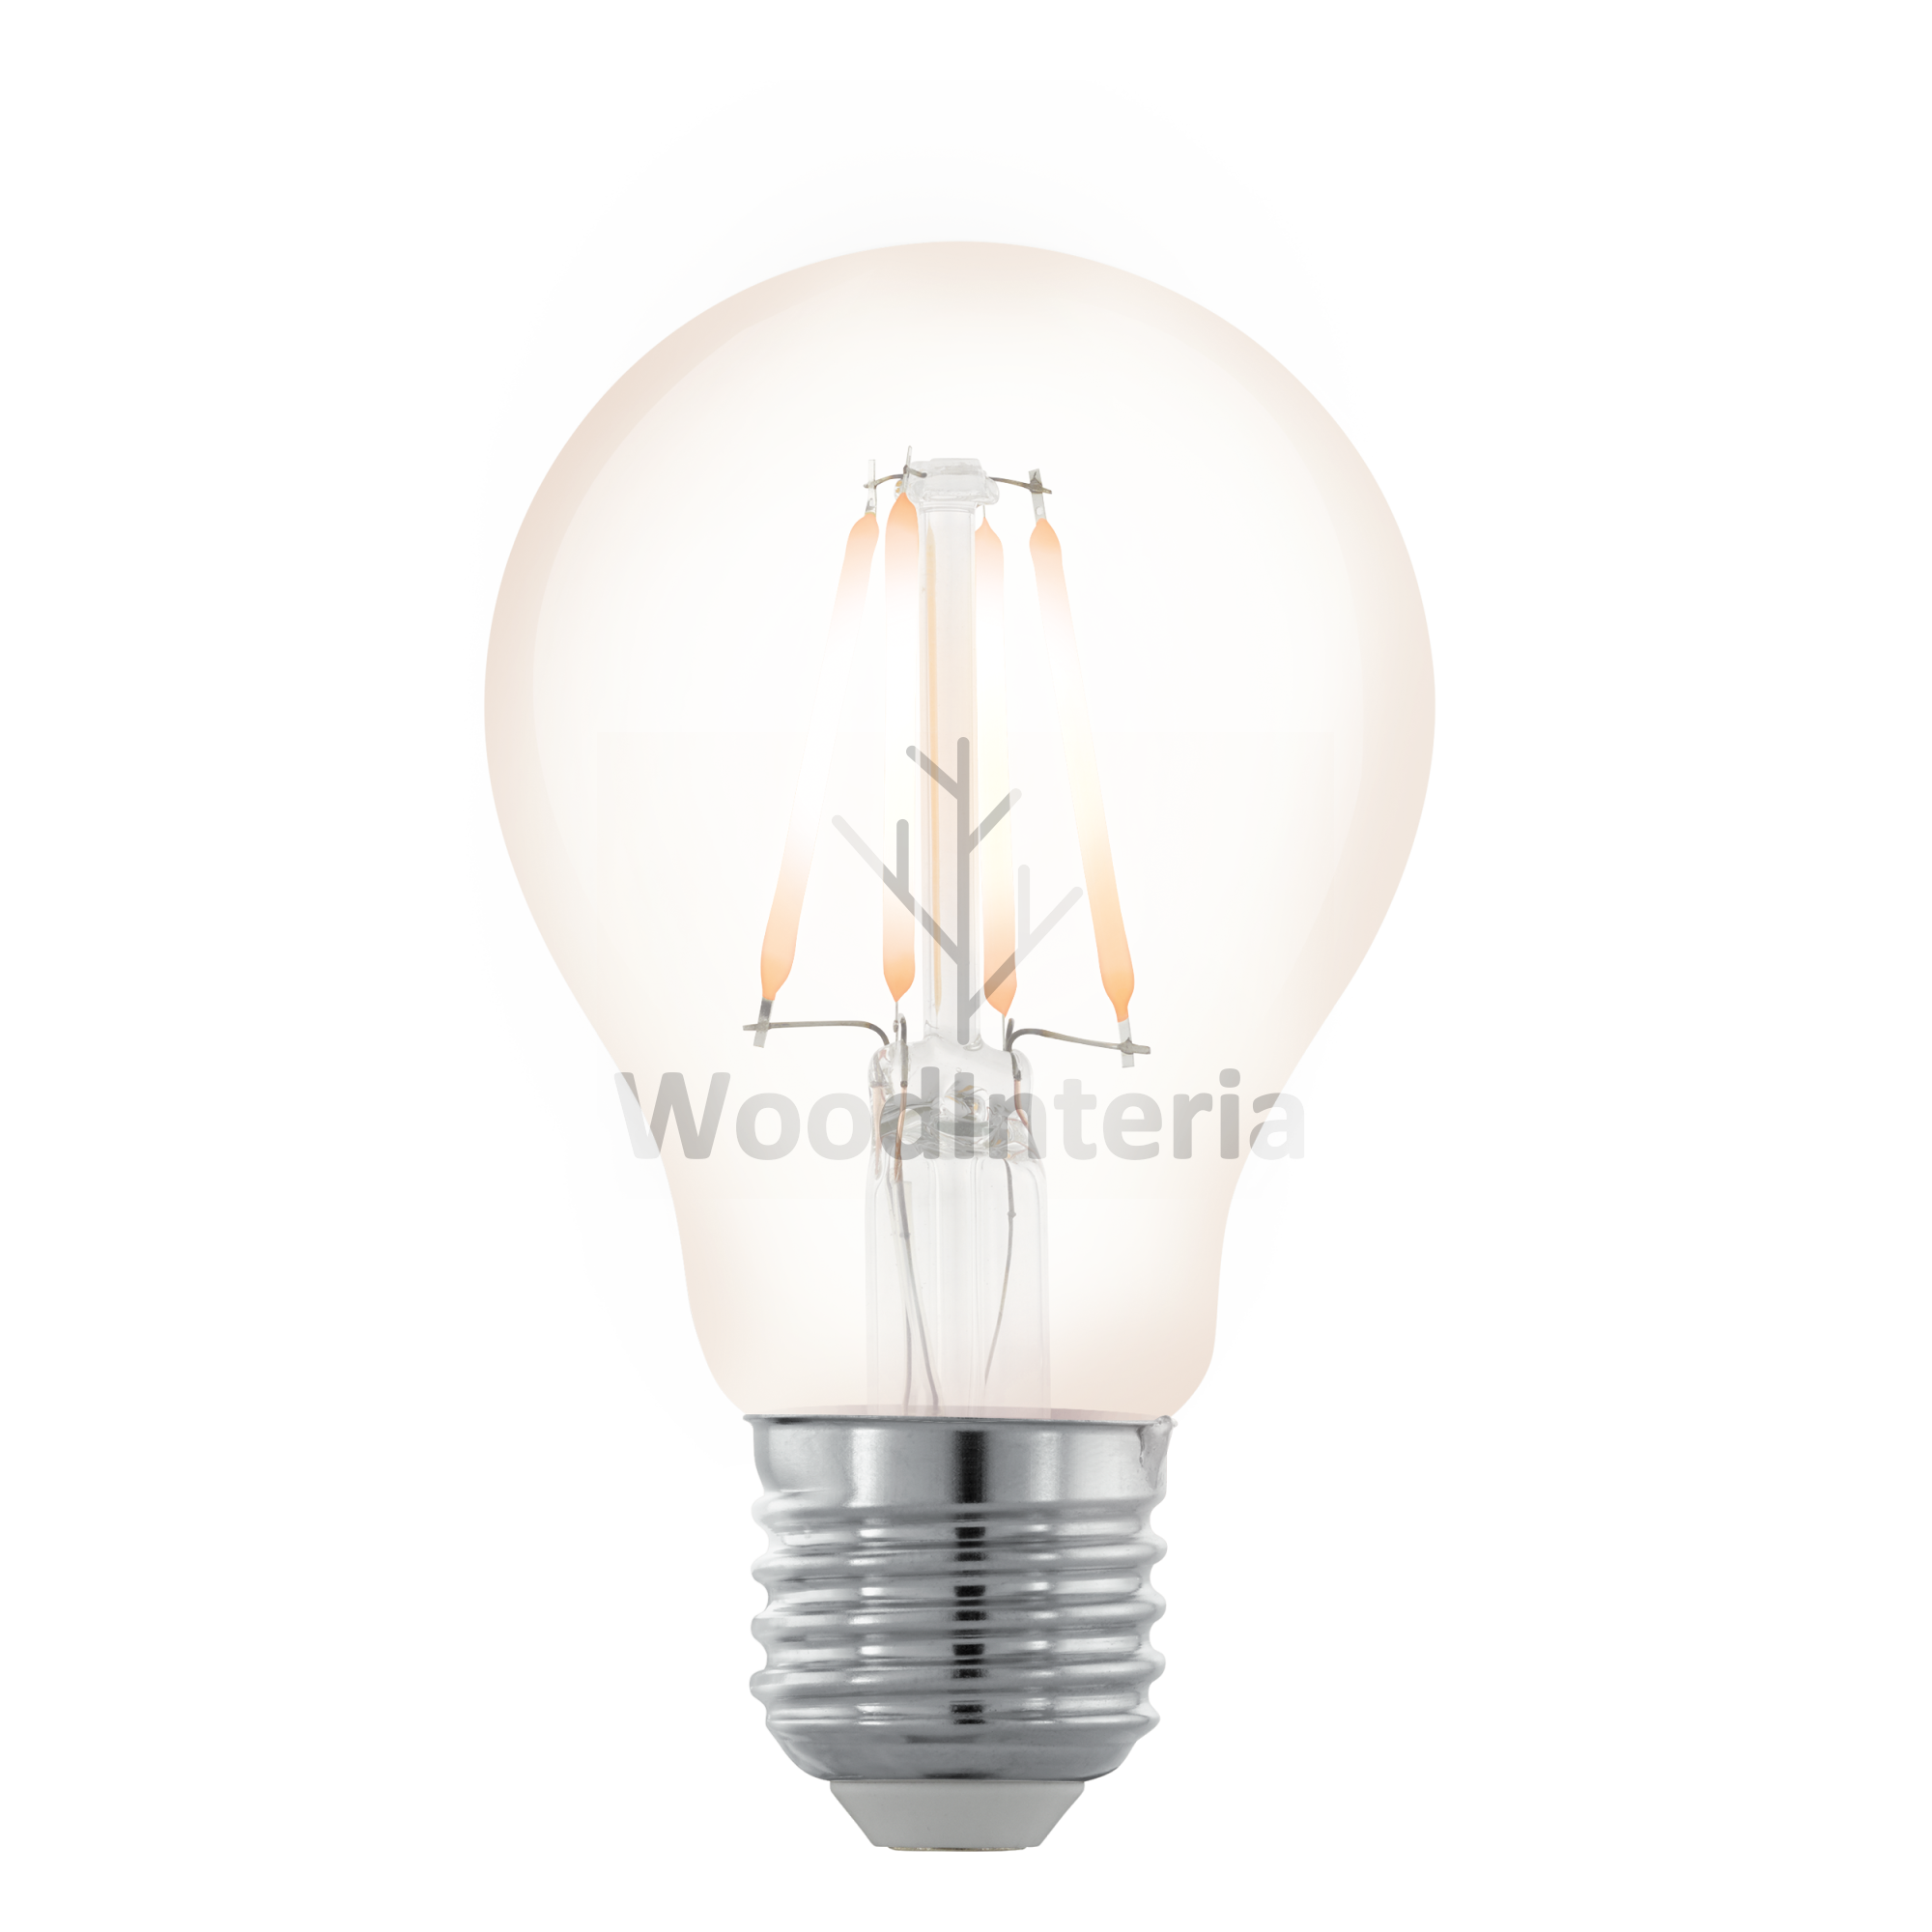 фото лампочка clean bulb northern lights #16 в скандинавском интерьере лофт эко | WoodInteria